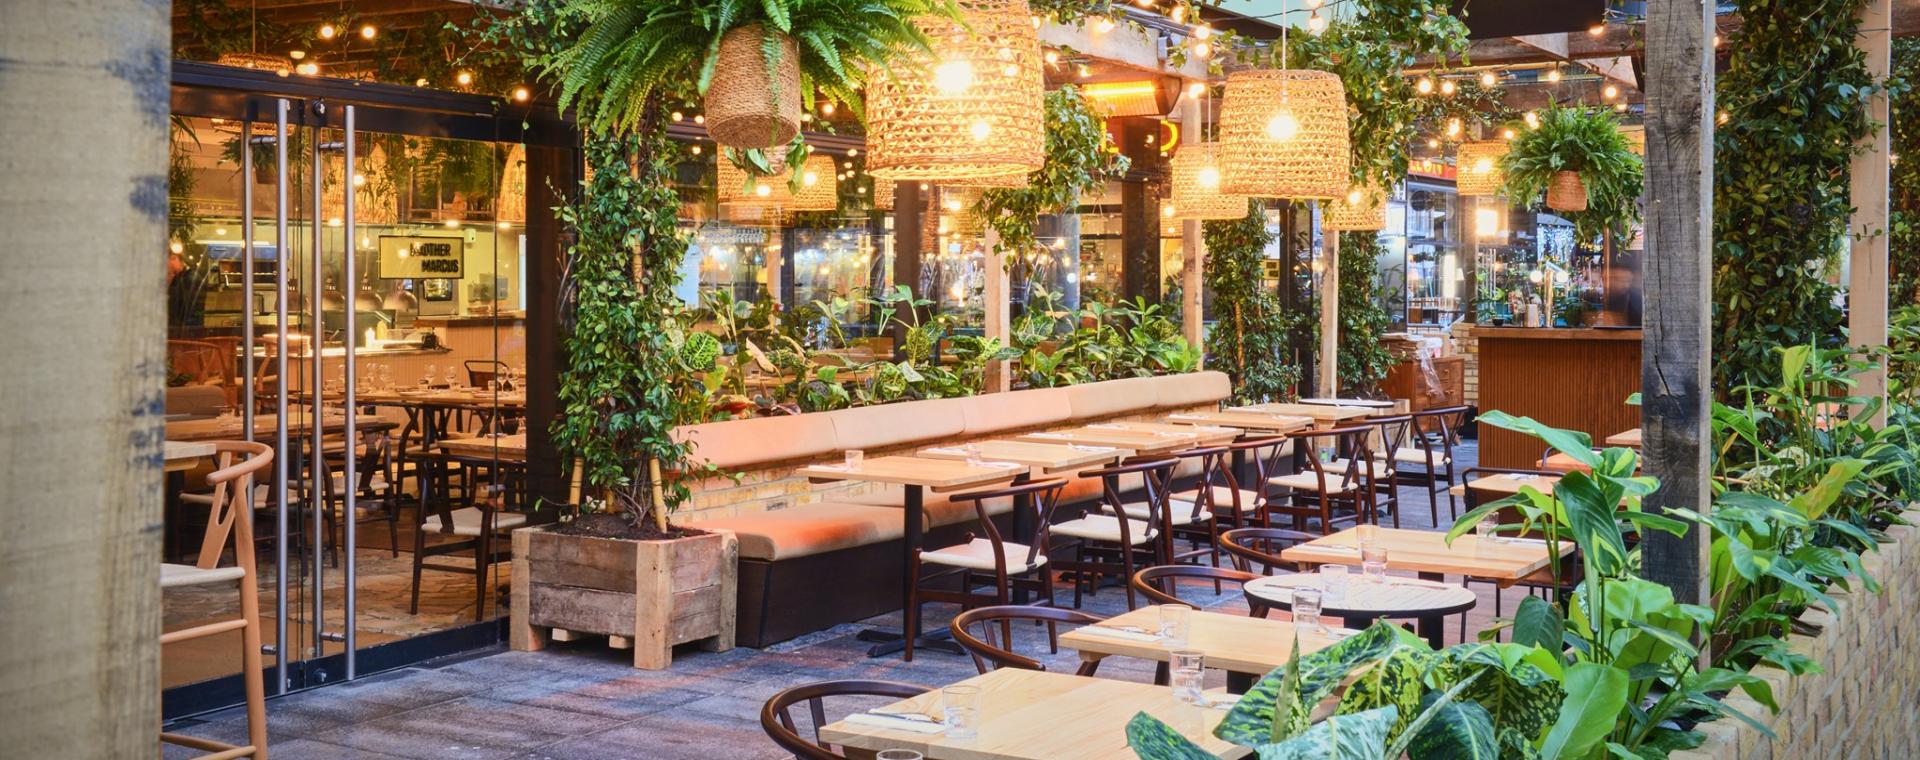 Restaurants surrounded by plants in Spitalfields Market, London